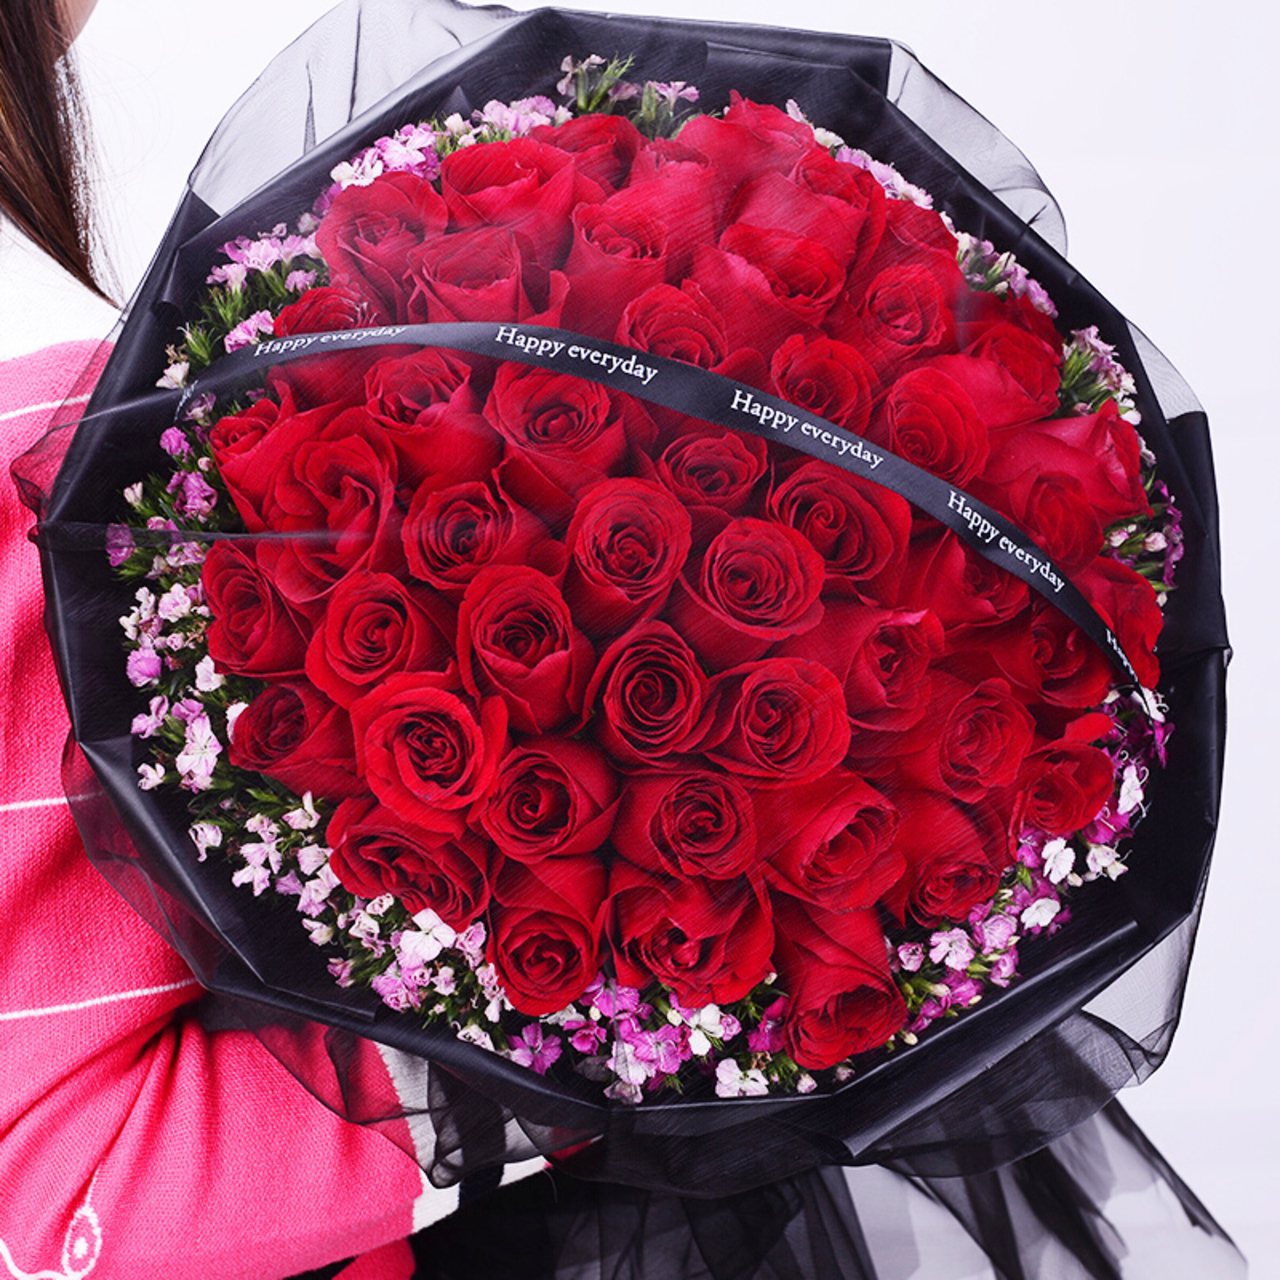 爱的陪伴- 66朵红玫瑰，粉色石竹梅外围丰满围边，黑色英文丝带搭配